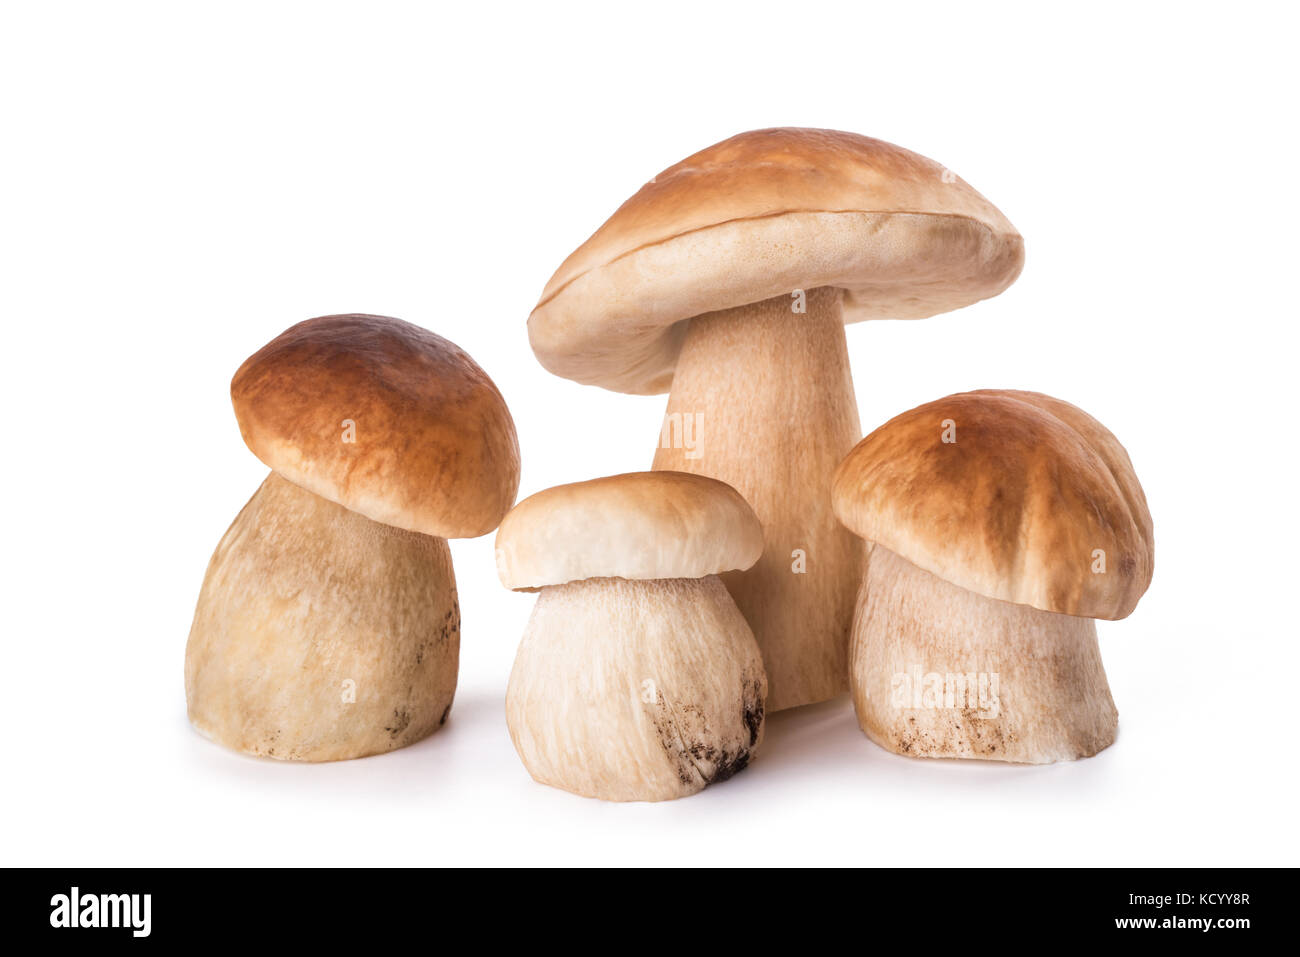 Mushrooms family  isolated  on white background Stock Photo